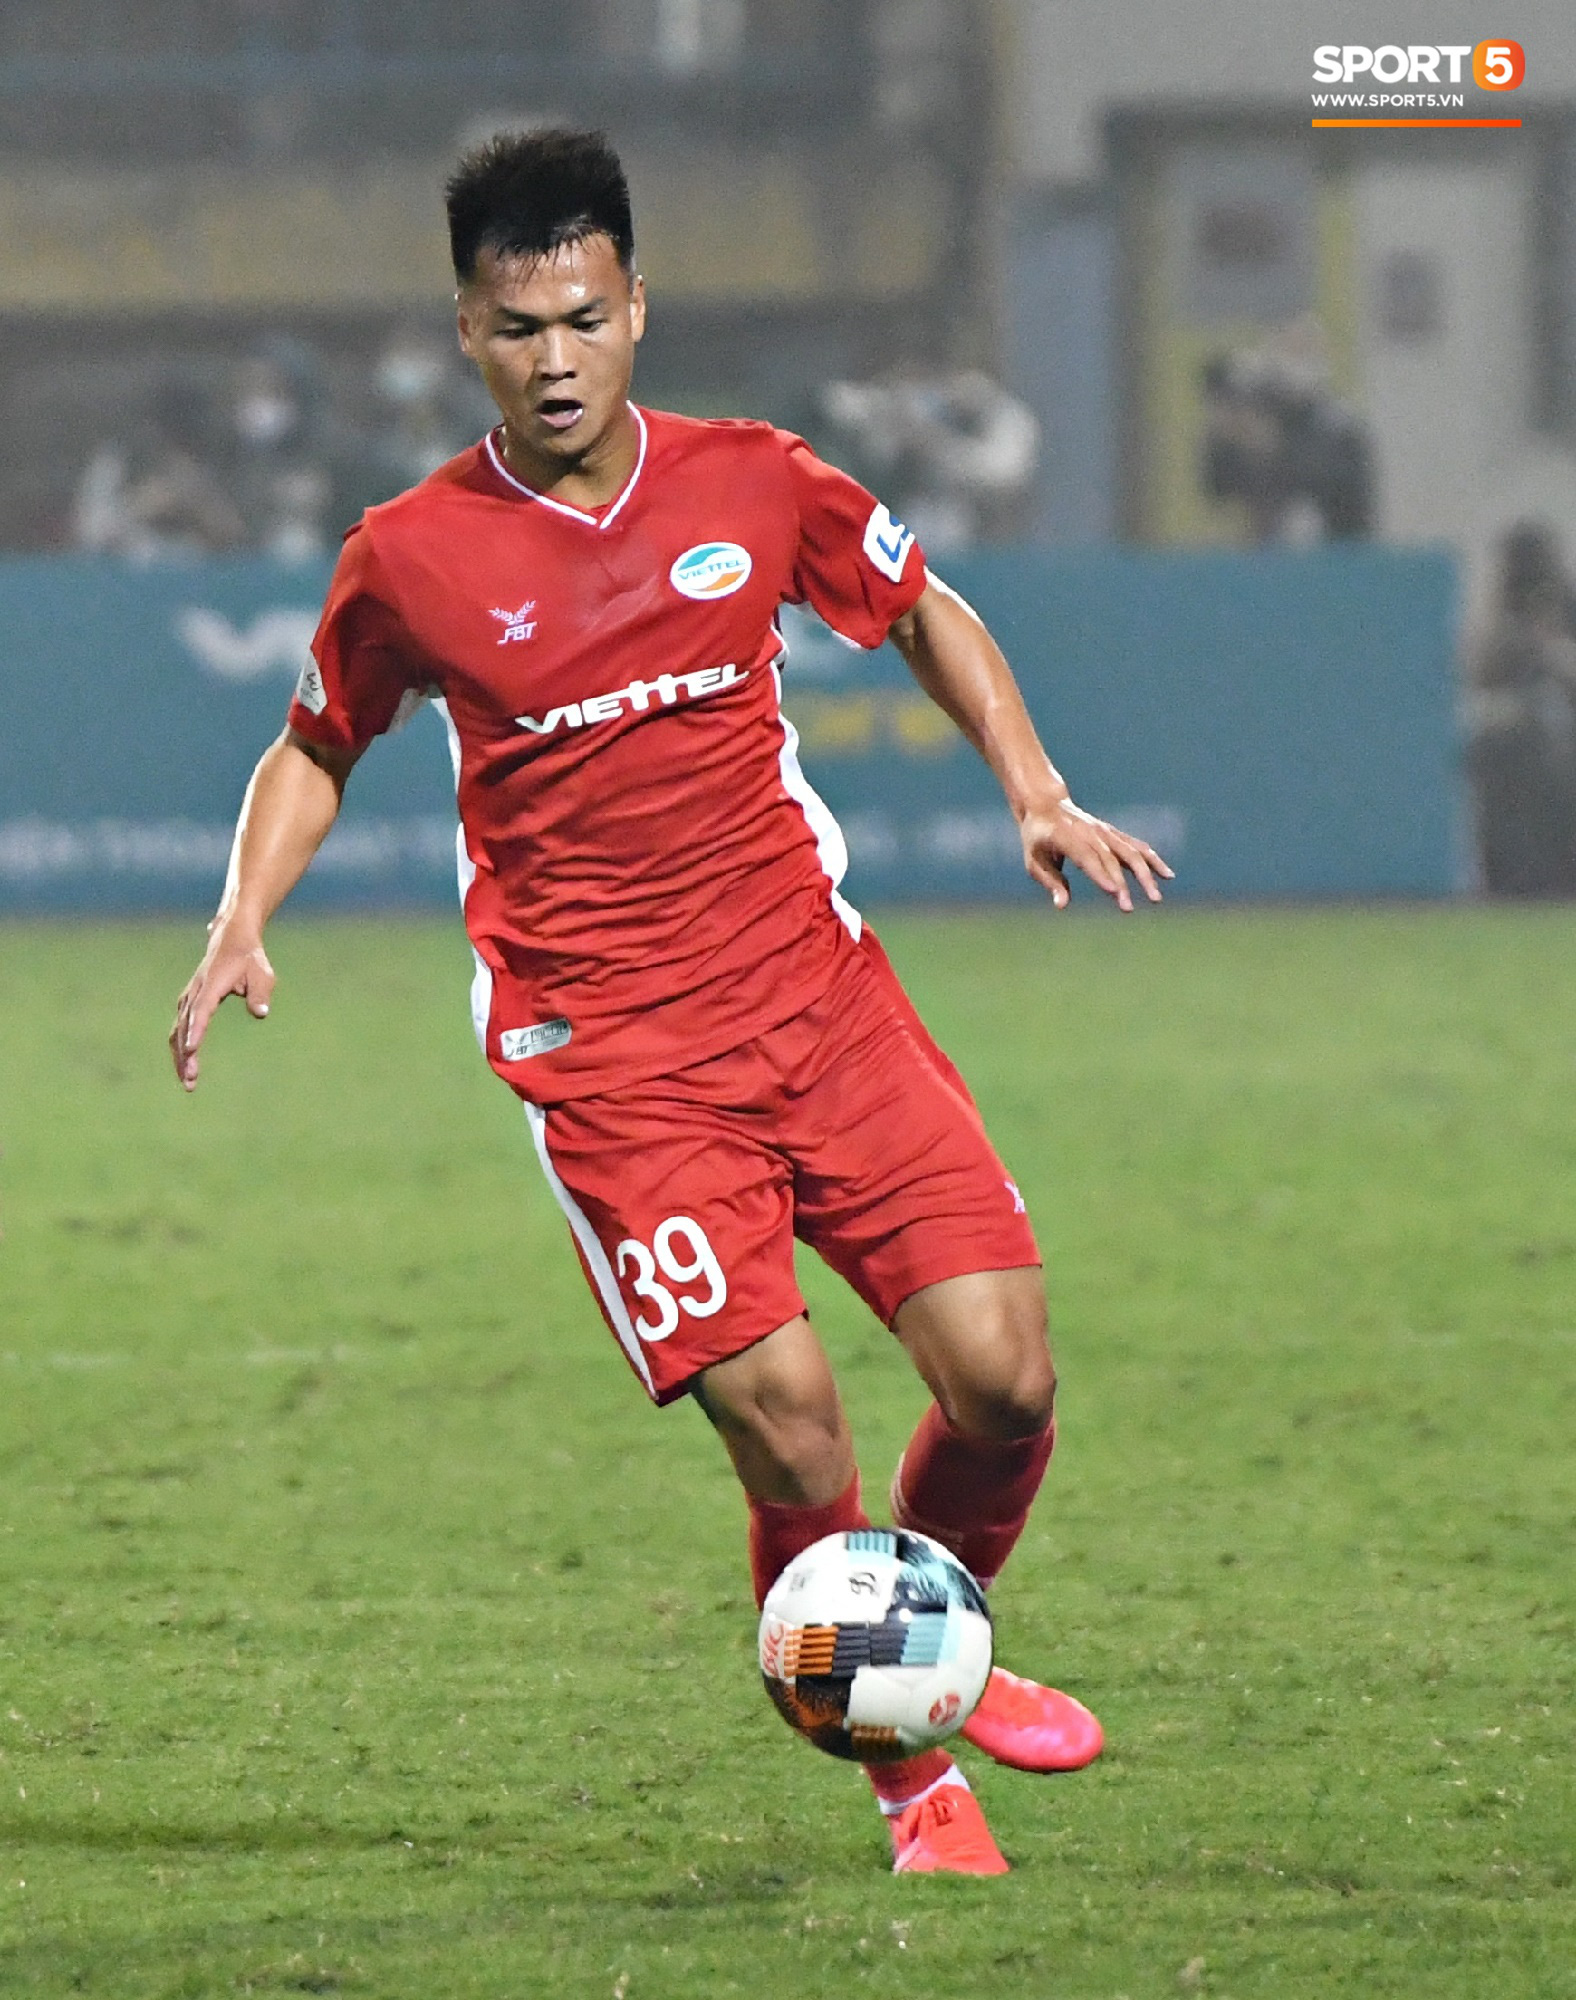 Cựu tuyển thủ U20 hồi sinh thần kỳ 2 năm sau chấn thương kinh hoàng nhất nhì bóng đá Việt, ghi điểm mạnh với trợ lý Lee Young-jin   - Ảnh 9.